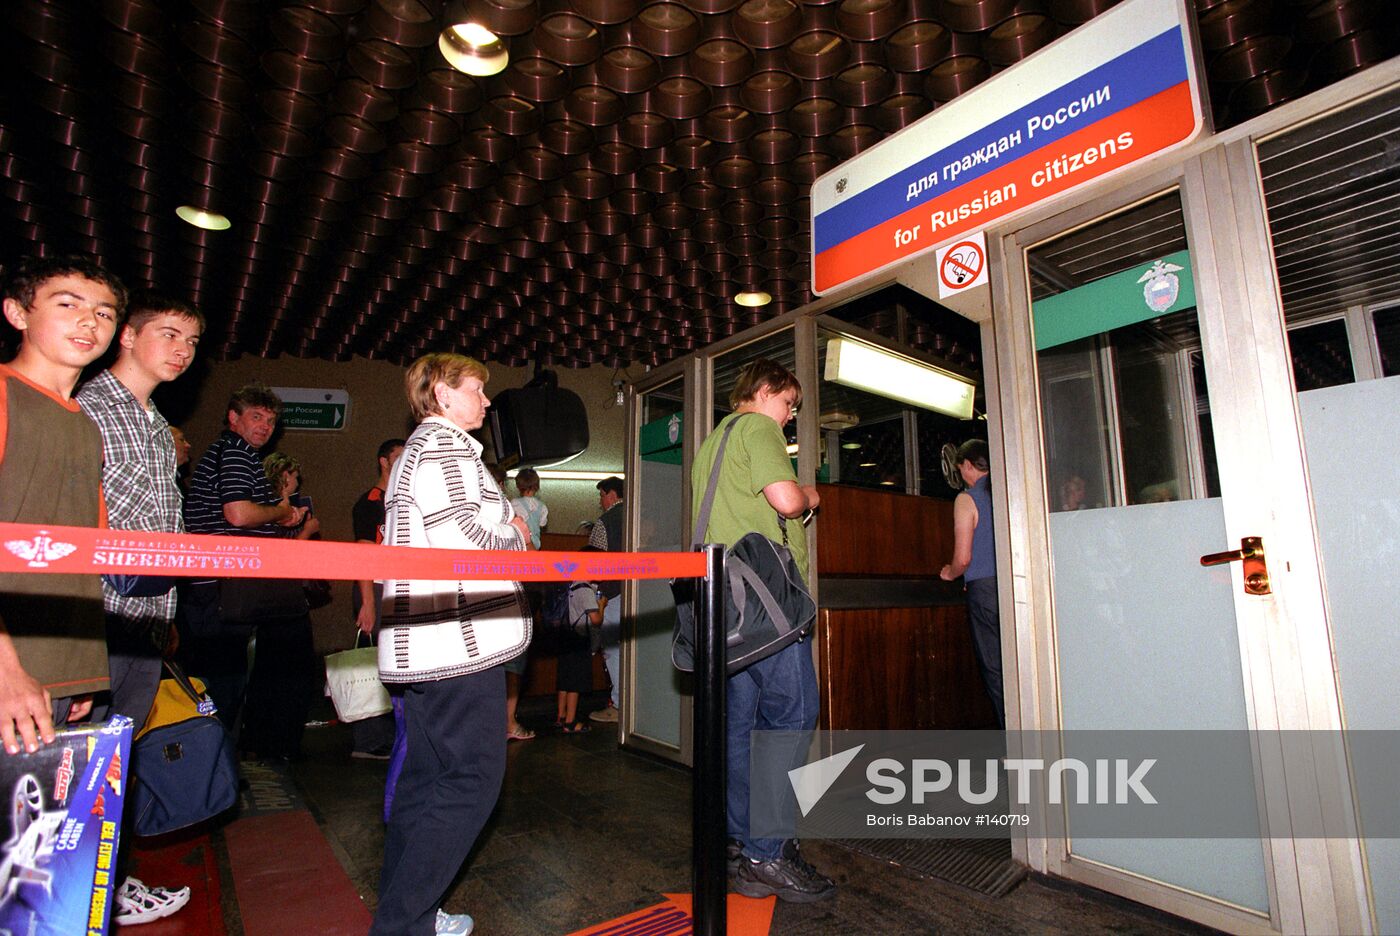 SHEREMETYEVO-2 AIRPORT PASSPORT CHECKS 